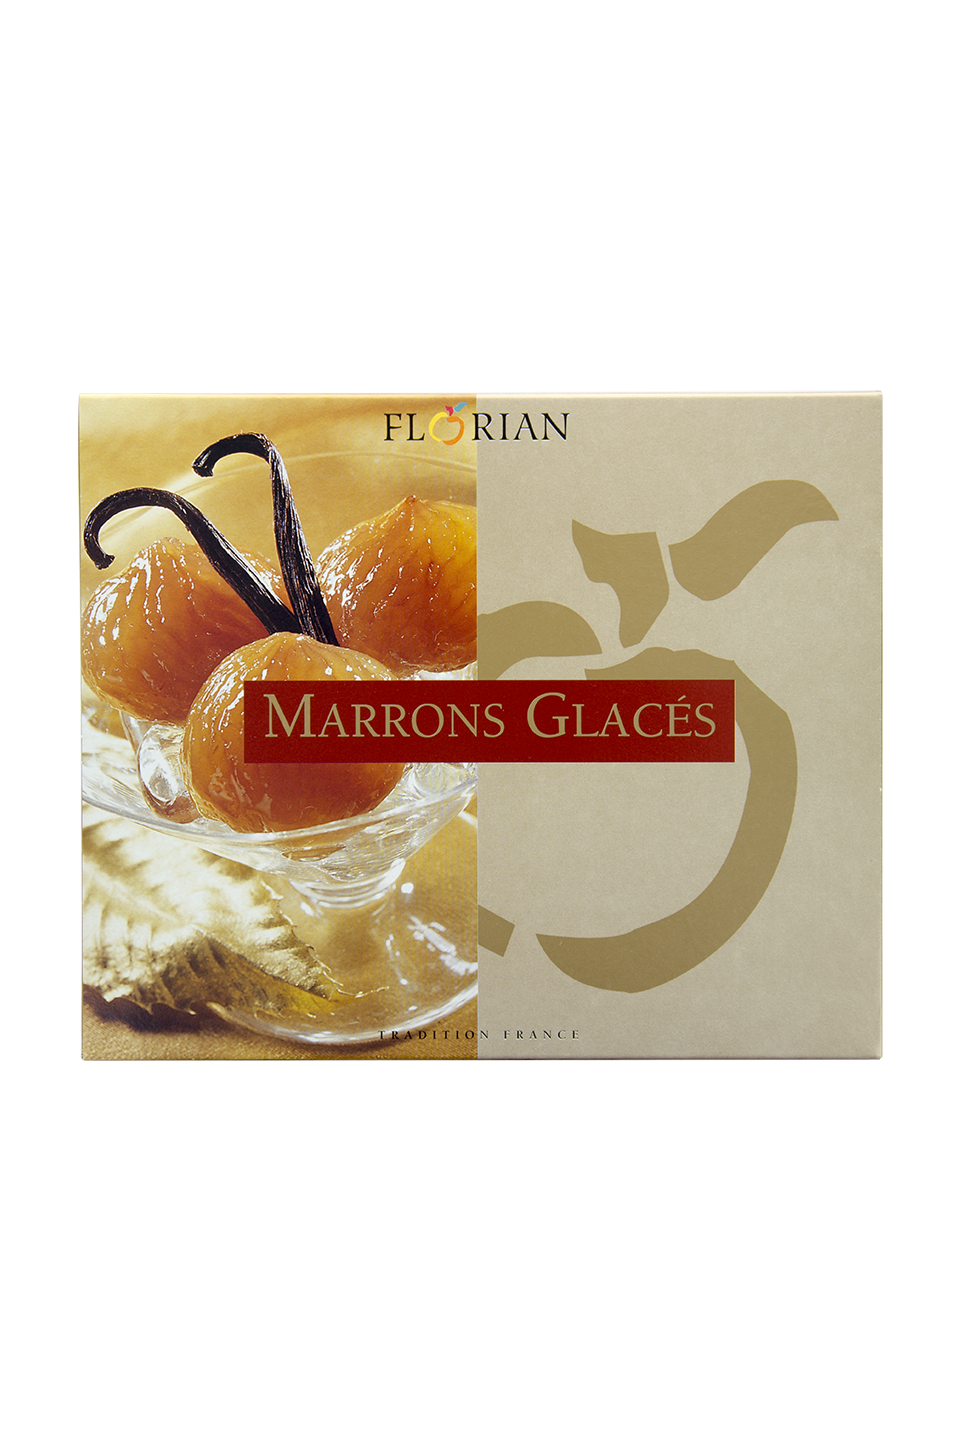 Marrons glacés en coffret sous vide - Confiserie Florian